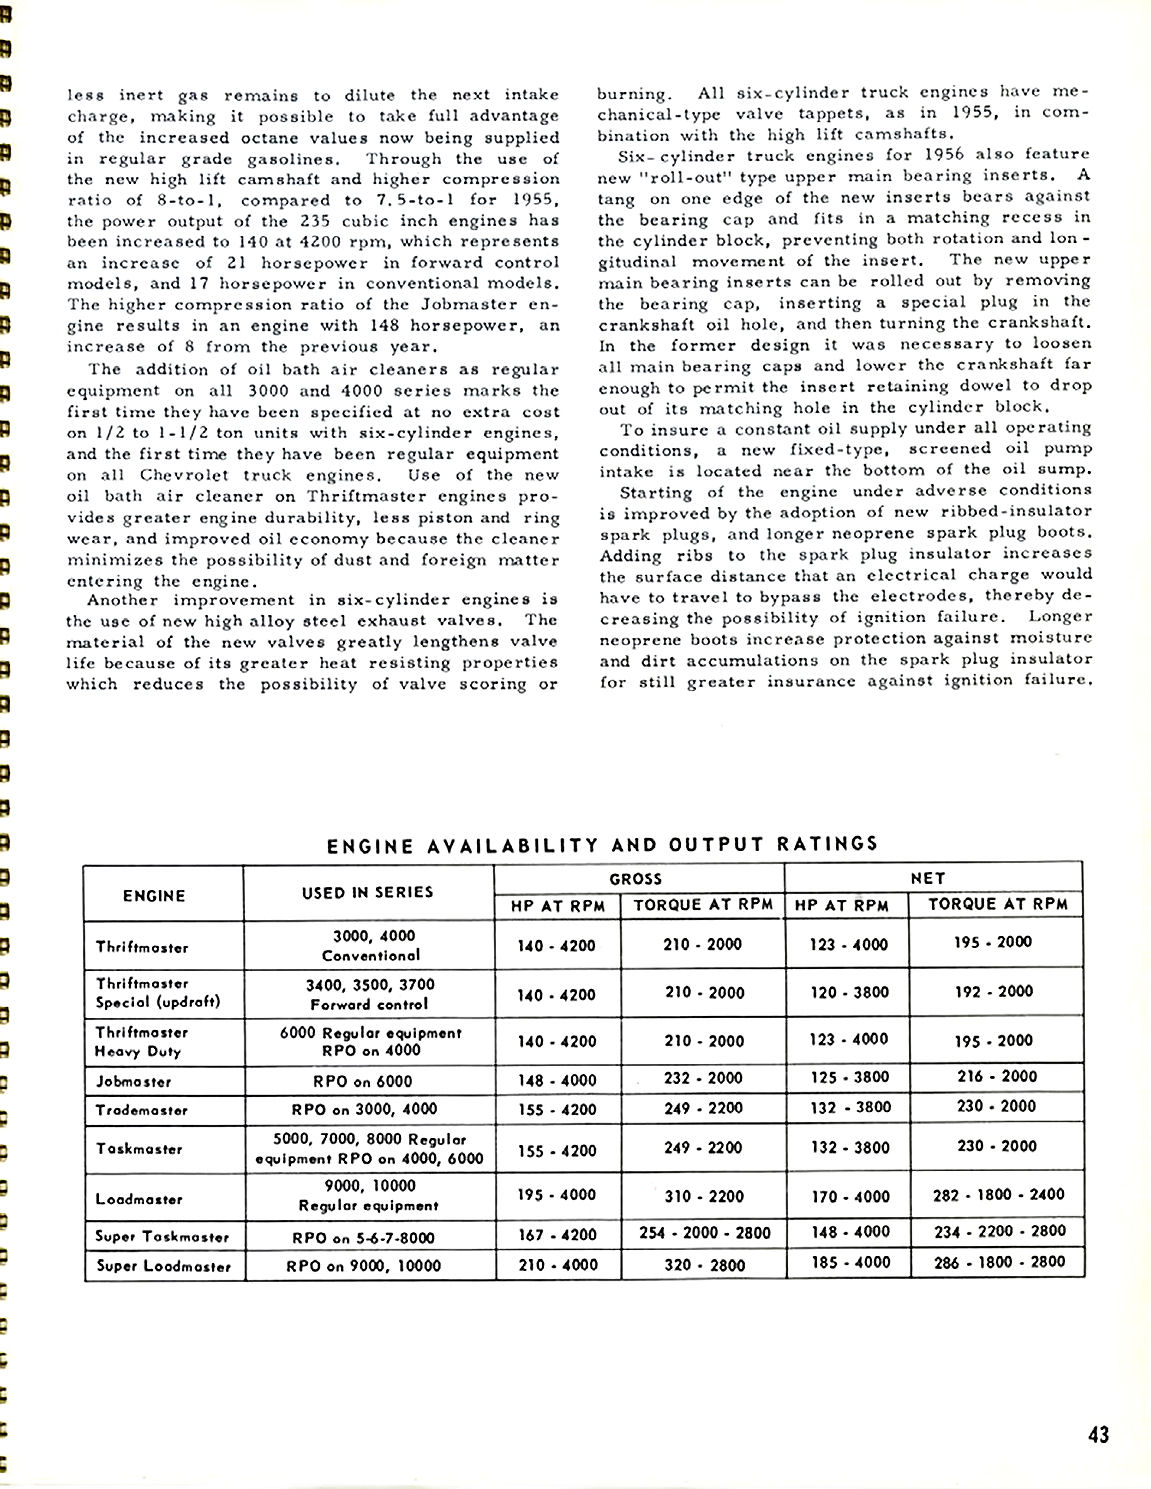 1956_Chevrolet_Truck_Engineering_Features-43